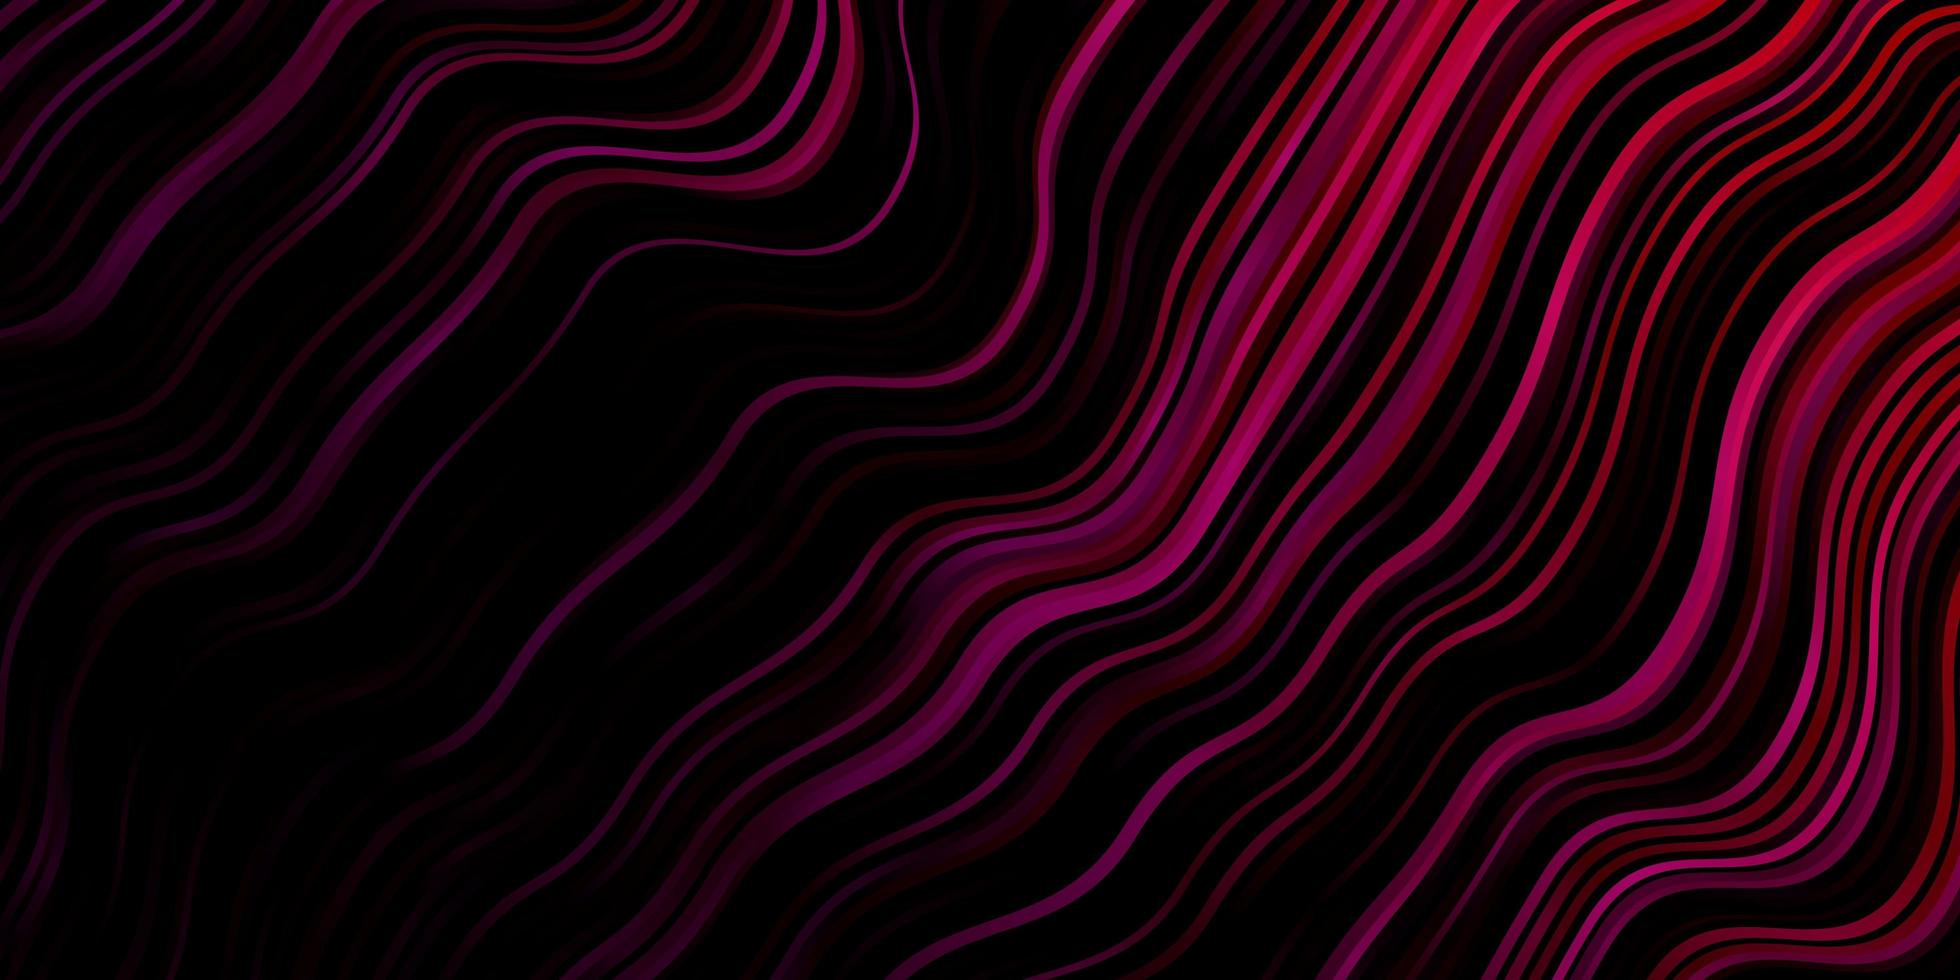 textura vector roxo, rosa escuro com linhas irônicas.